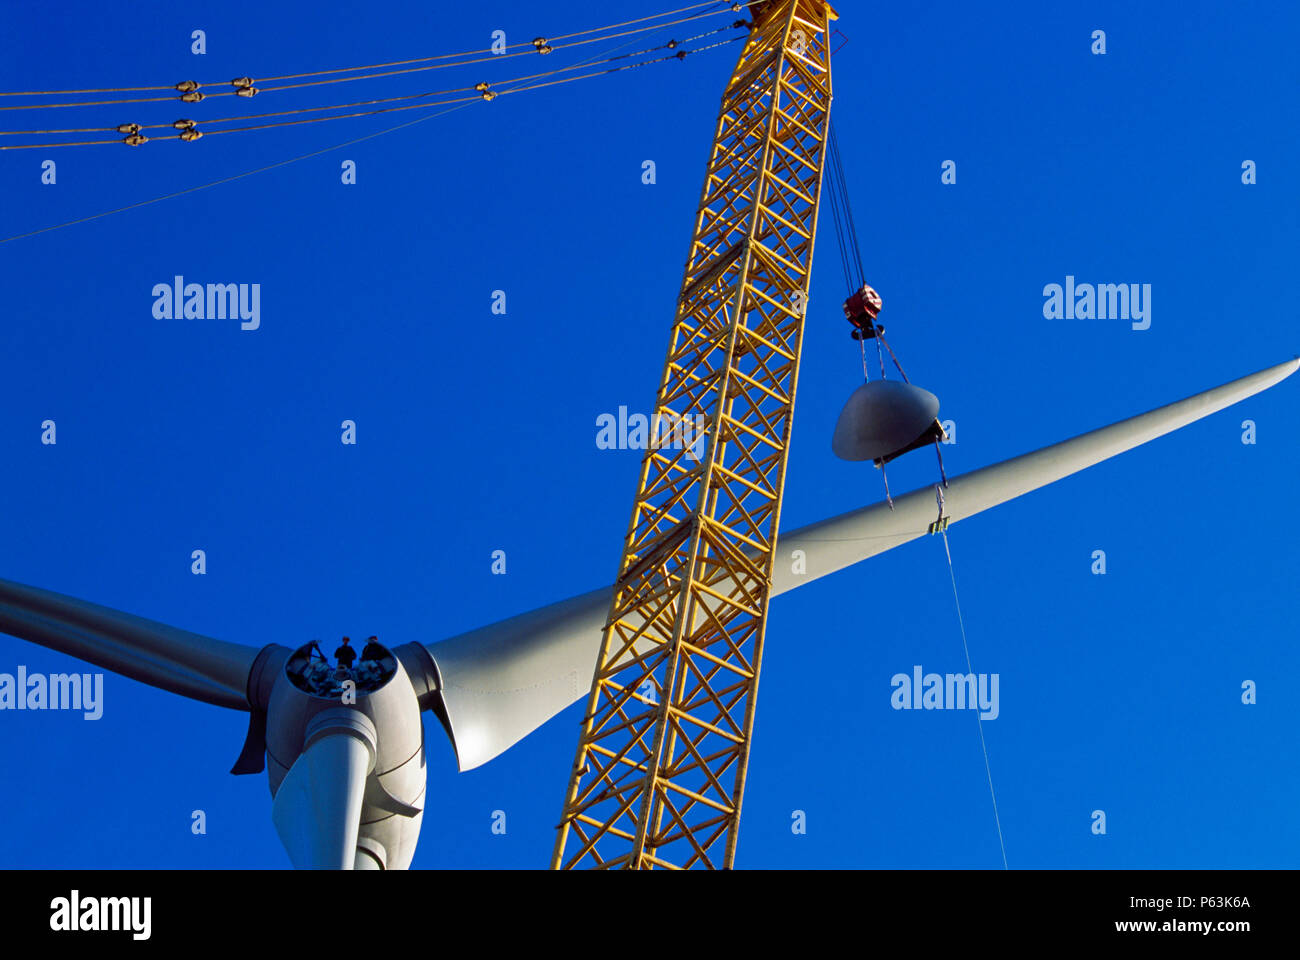 Zwei Arbeiter warten auf der Nabe eines riesigen ENERCON Windenergieanlage bereit, die Nase, die angehoben wird. Worksop Großbritannien. Deze Stockfoto